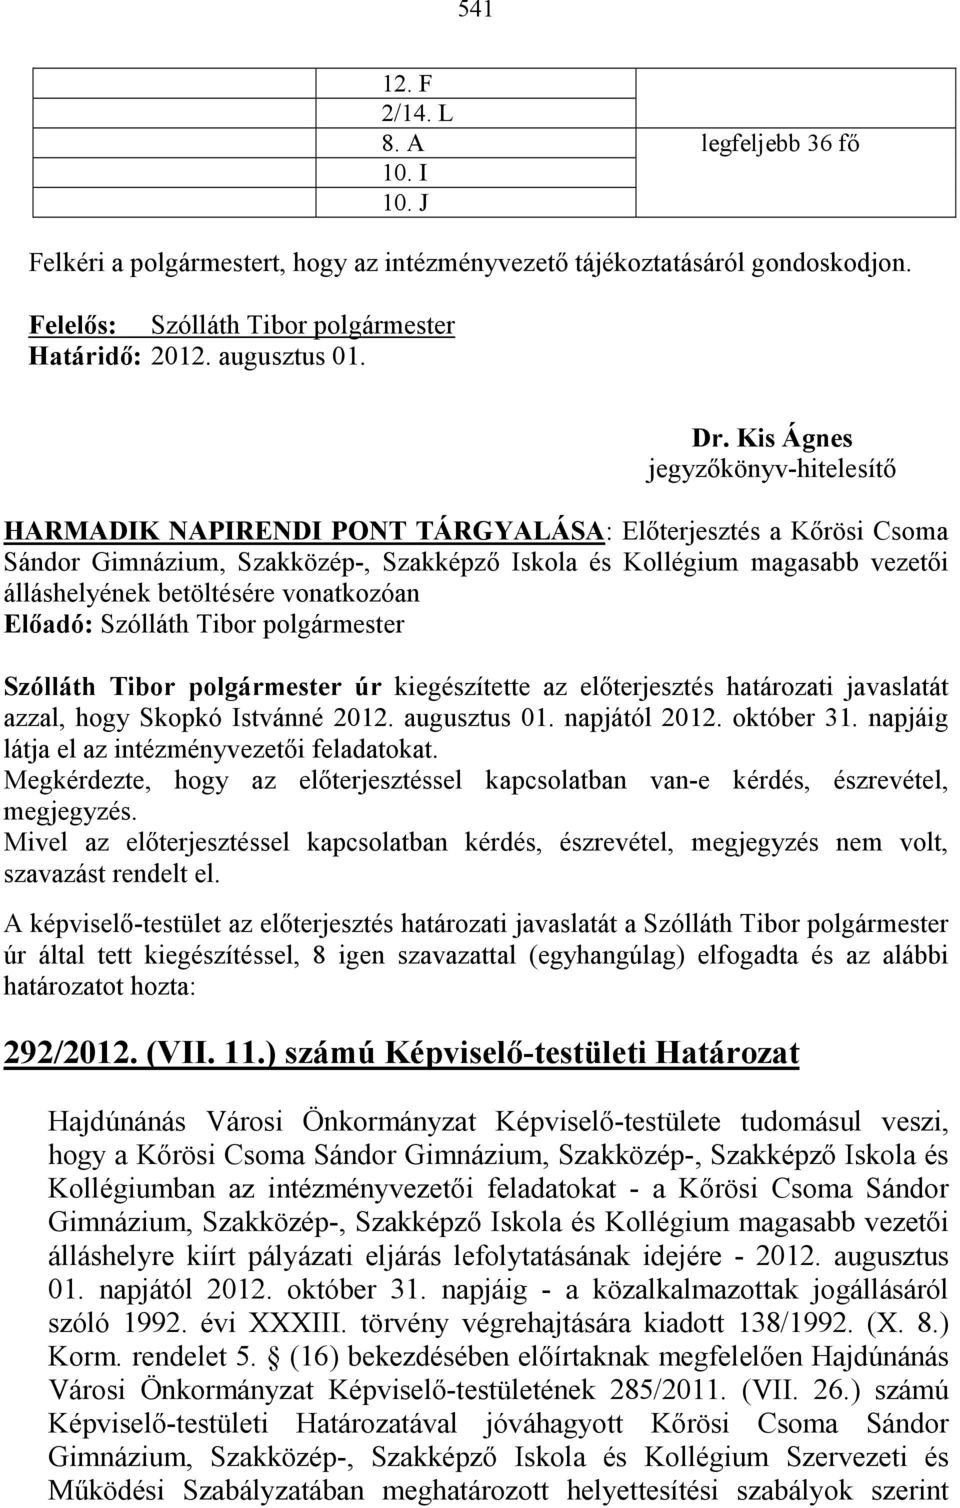 polgármester úr kiegészítette az elıterjesztés határozati javaslatát azzal, hogy Skopkó Istvánné 2012. augusztus 01. napjától 2012. október 31. napjáig látja el az intézményvezetıi feladatokat.